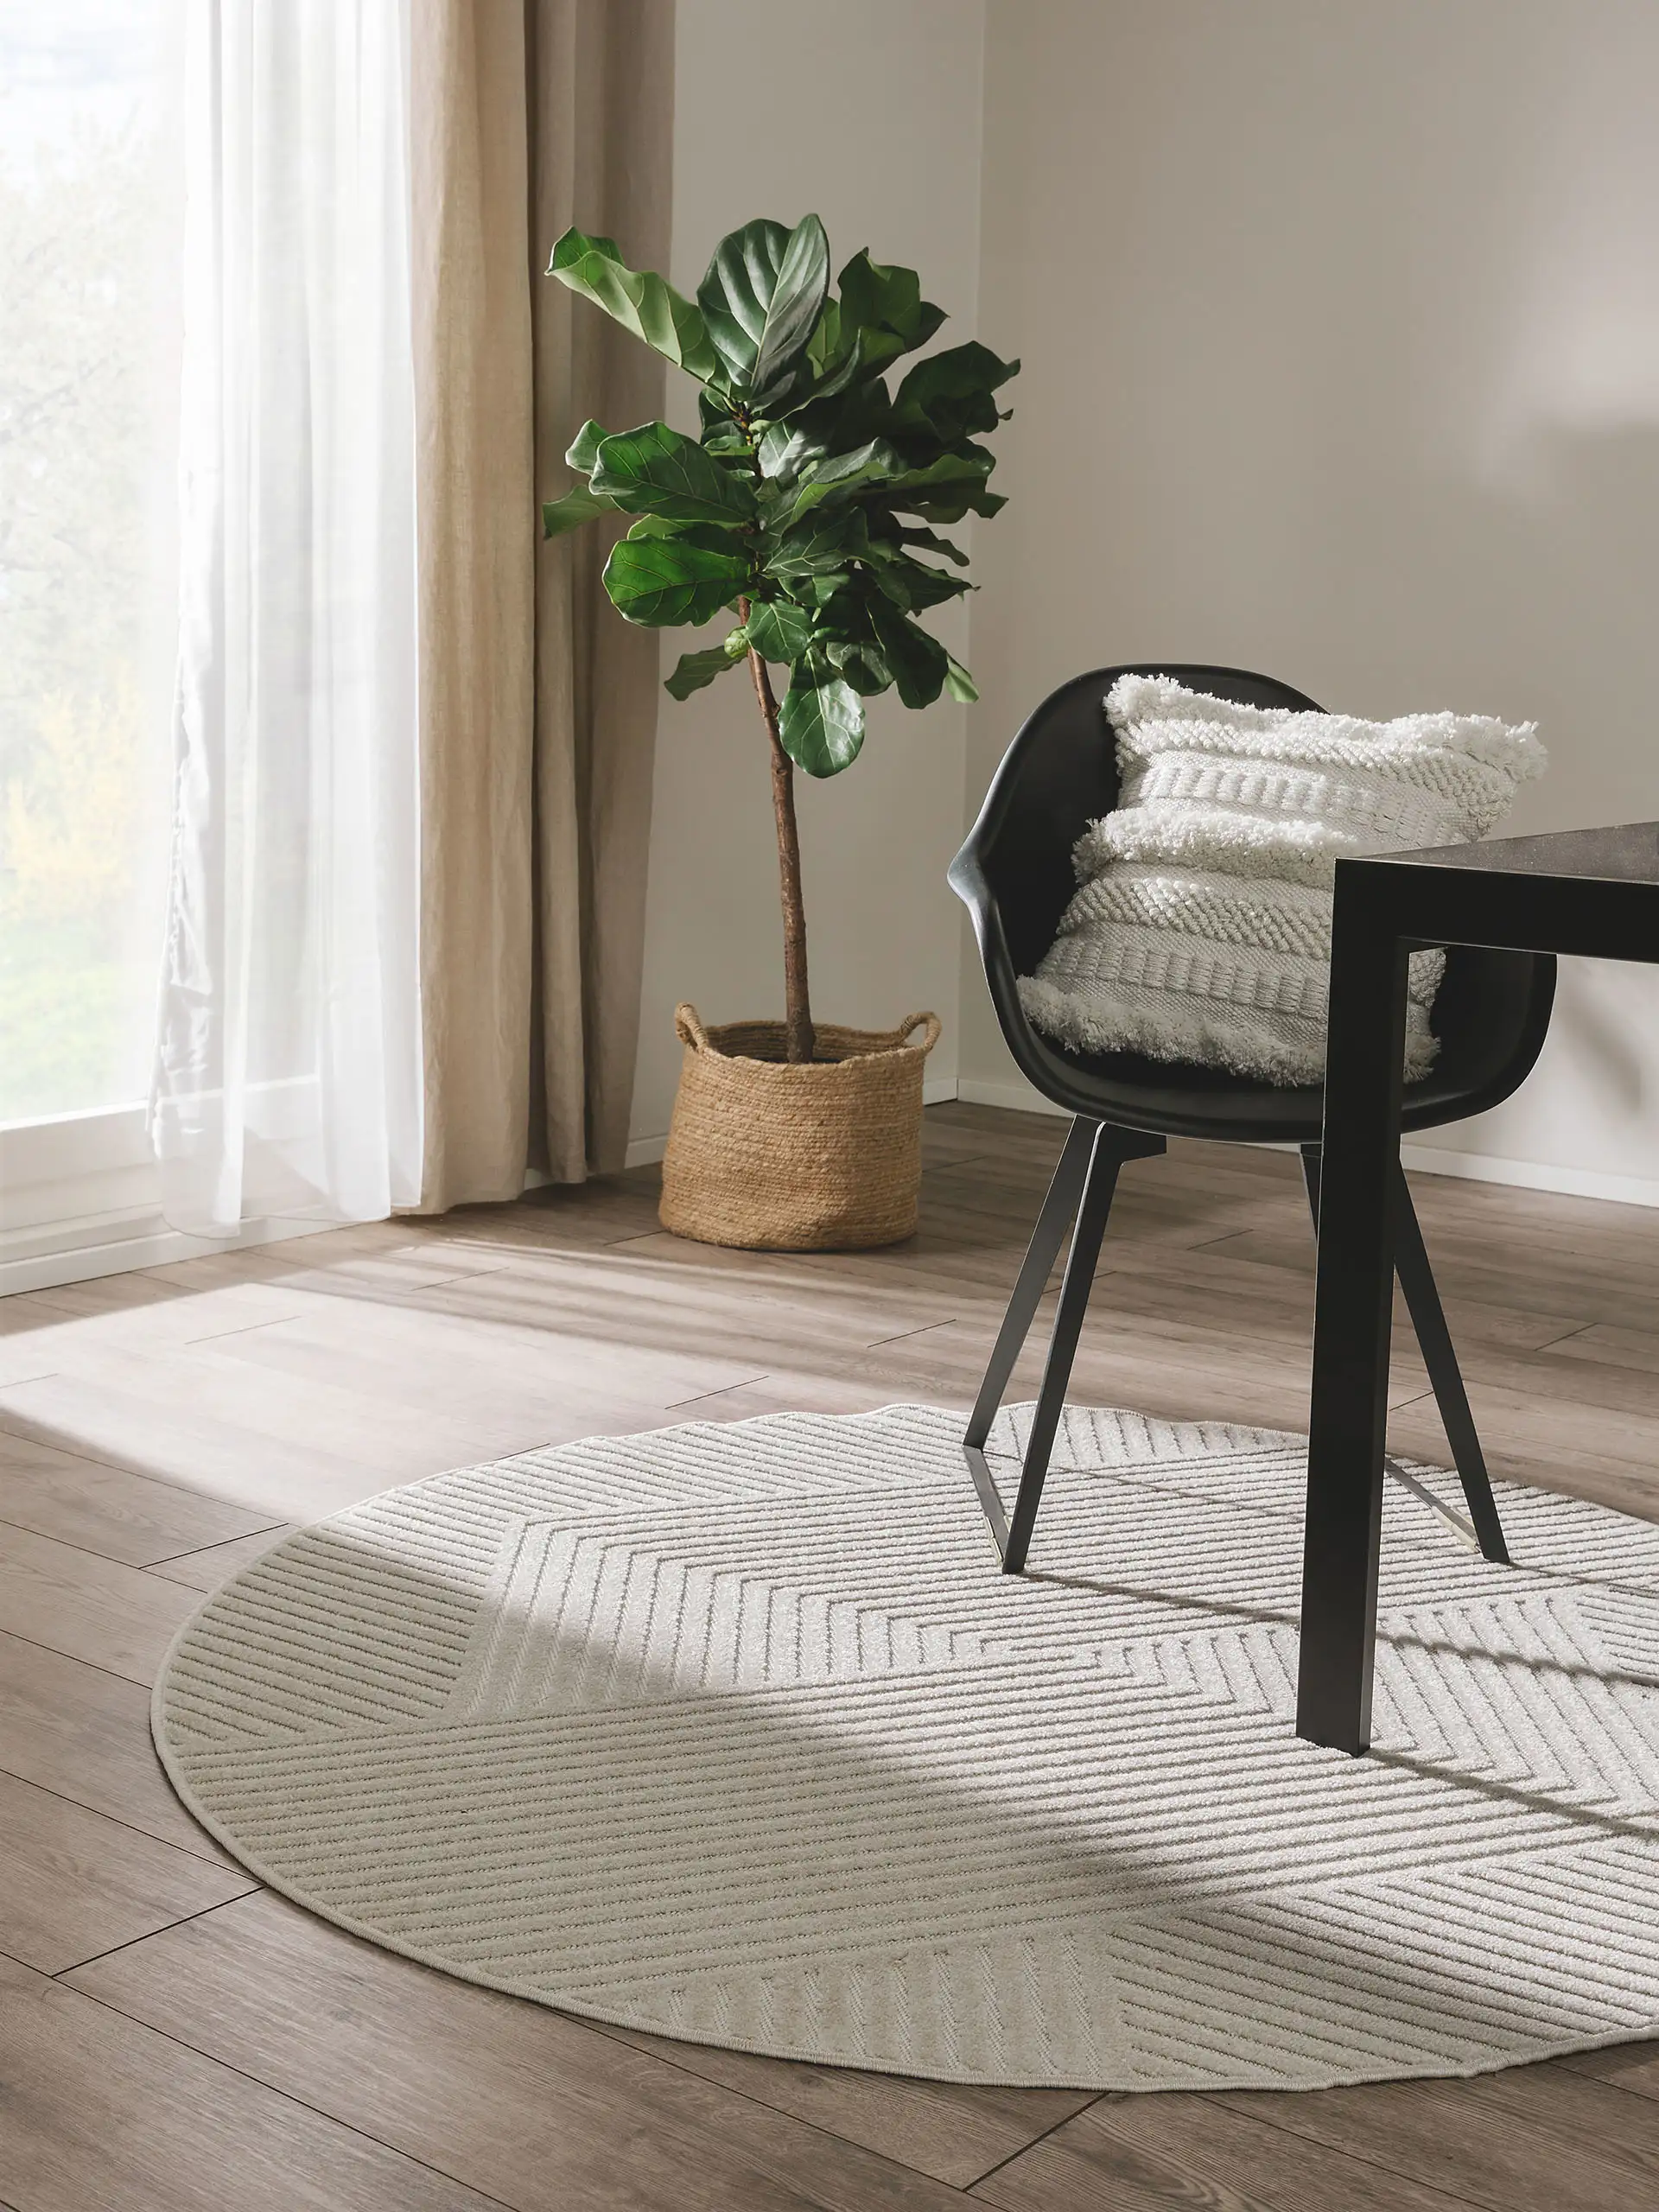 Kleiner, runder Teppich unter einem schwarzen Sessel mit weißem Boho-Kissen und einer große Pflanze in der linken Zimmerecke